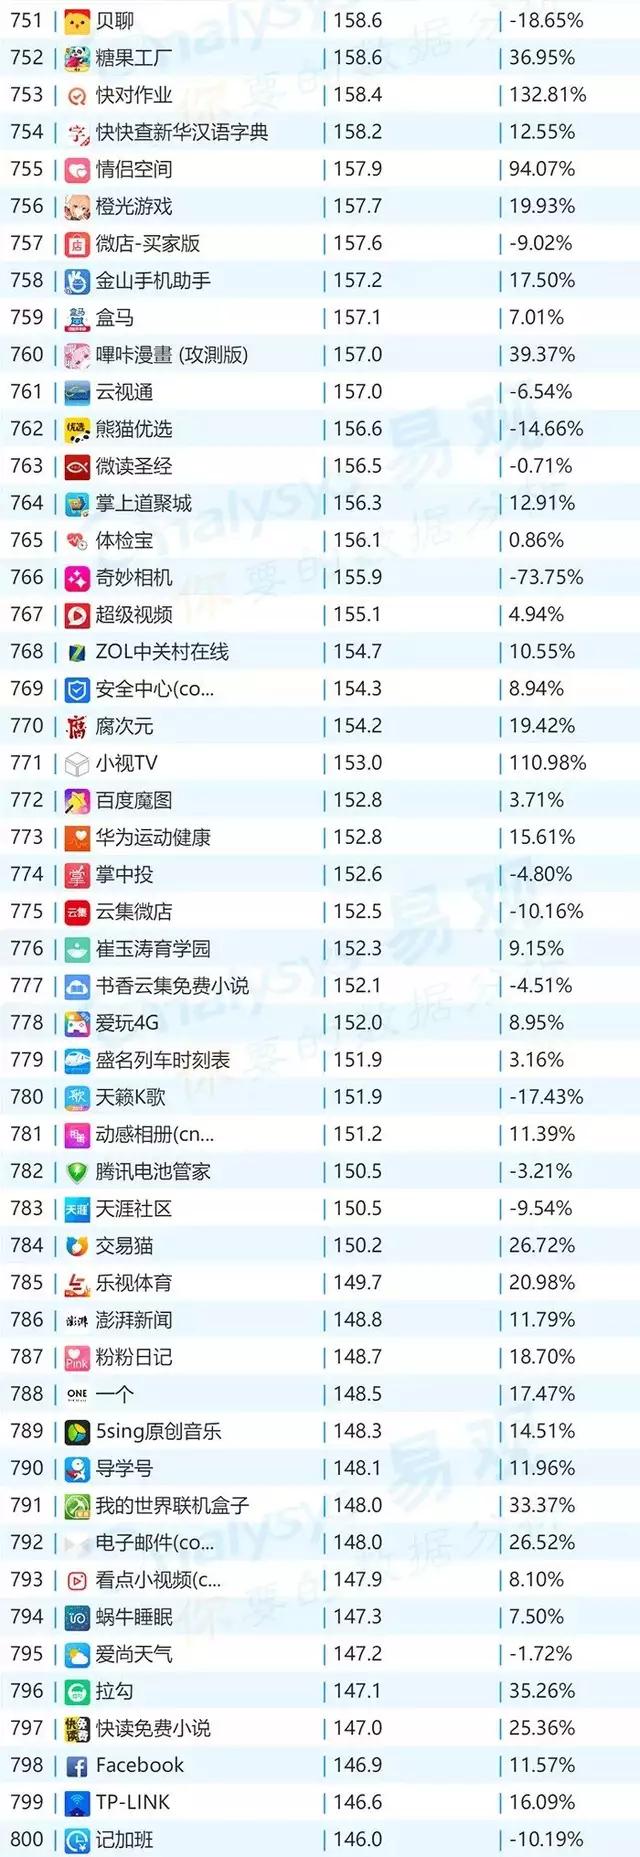 微信,2018年最新移动App TOP1000排行榜